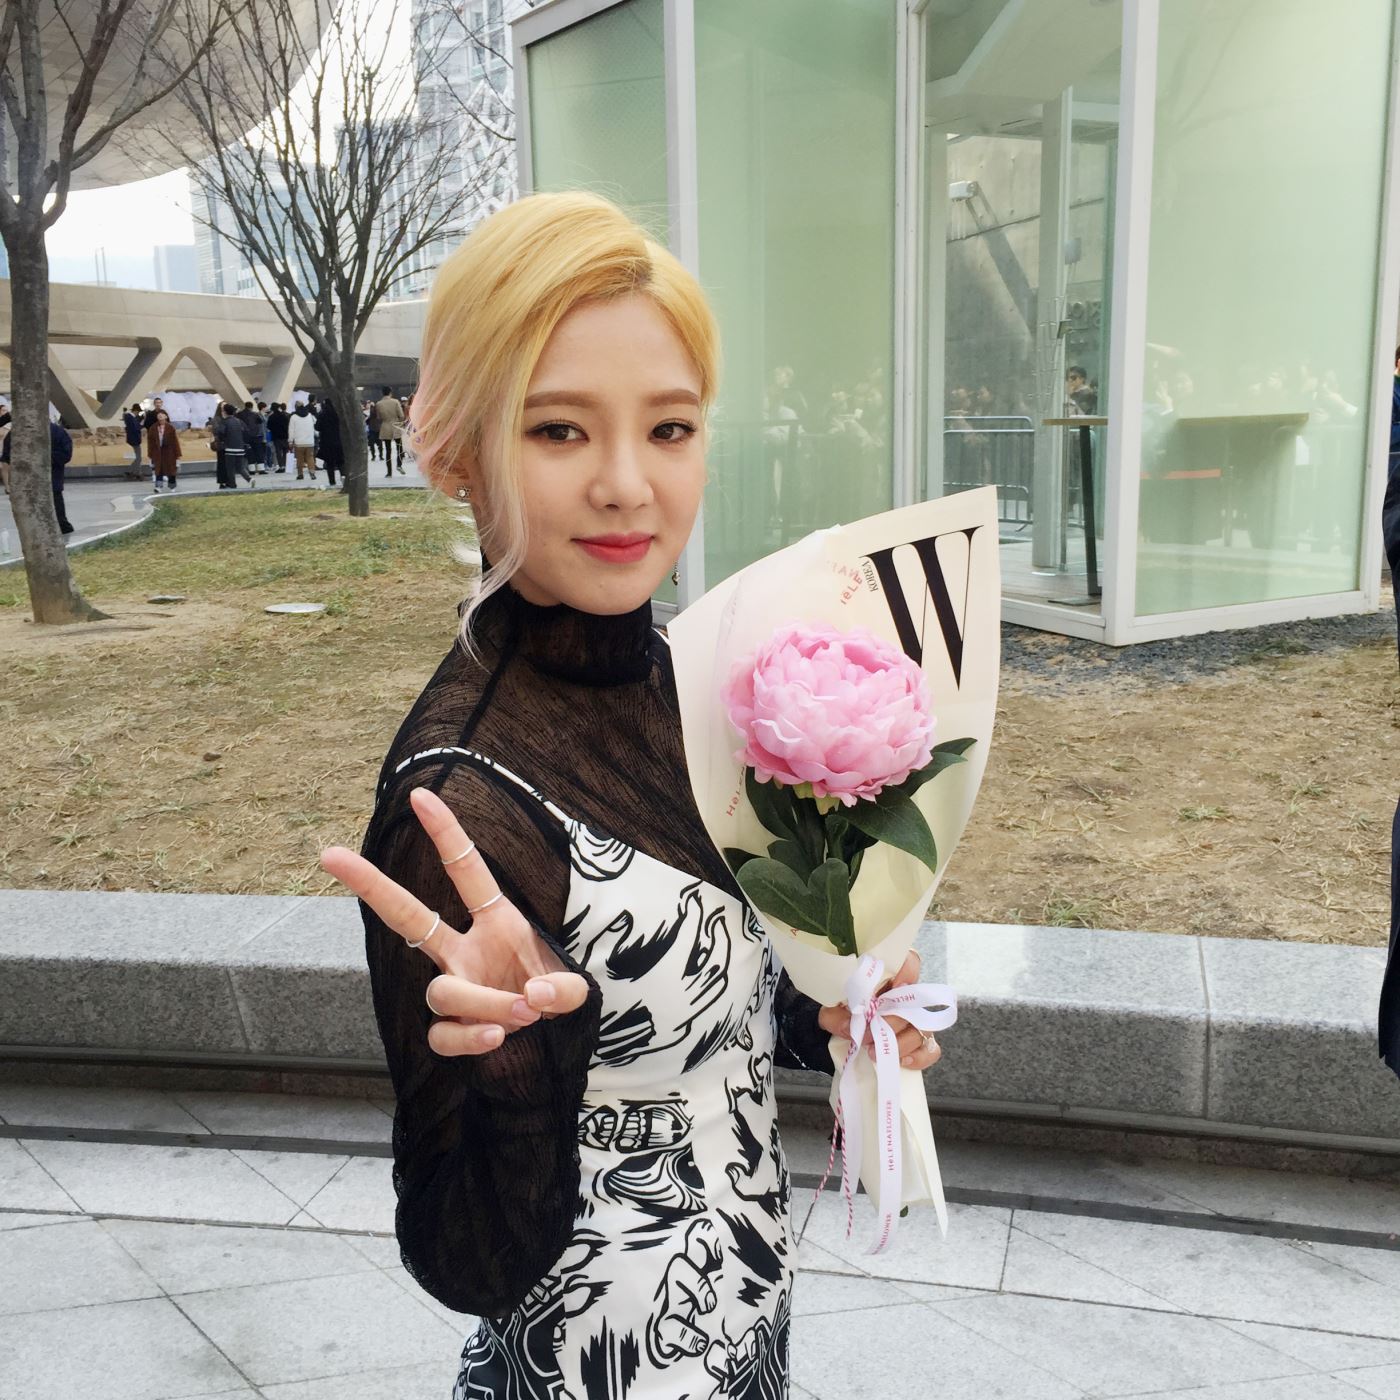 [PIC][23-03-2016]HyoYeon tham dự Show diễn của thương hiệu "KYE" trong khuôn khổ "HERA SEOUL FASHION WEEK S/S 2016'" vào trưa nay  Style_571dc170cec70